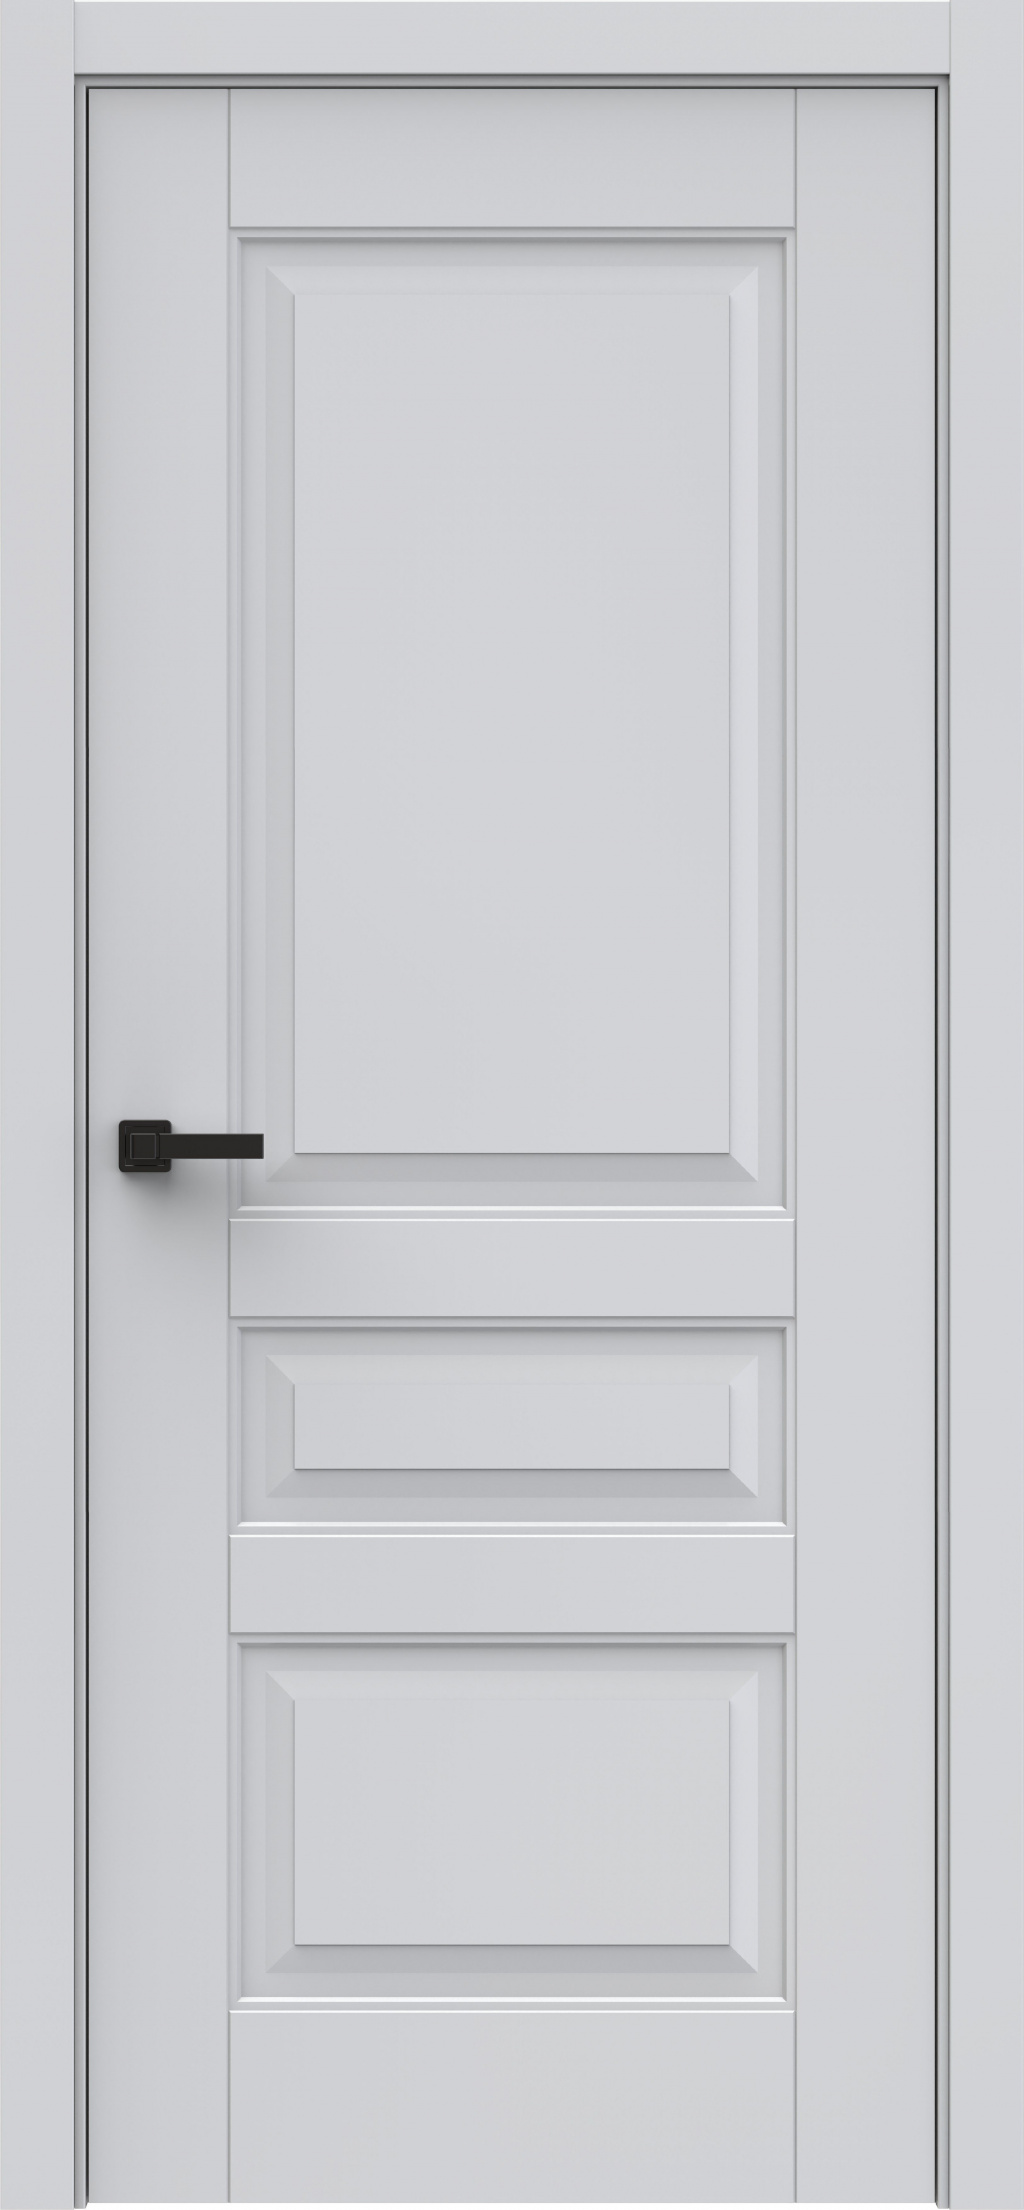 Questdoors Межкомнатная дверь QL 3, арт. 23464 - фото №1